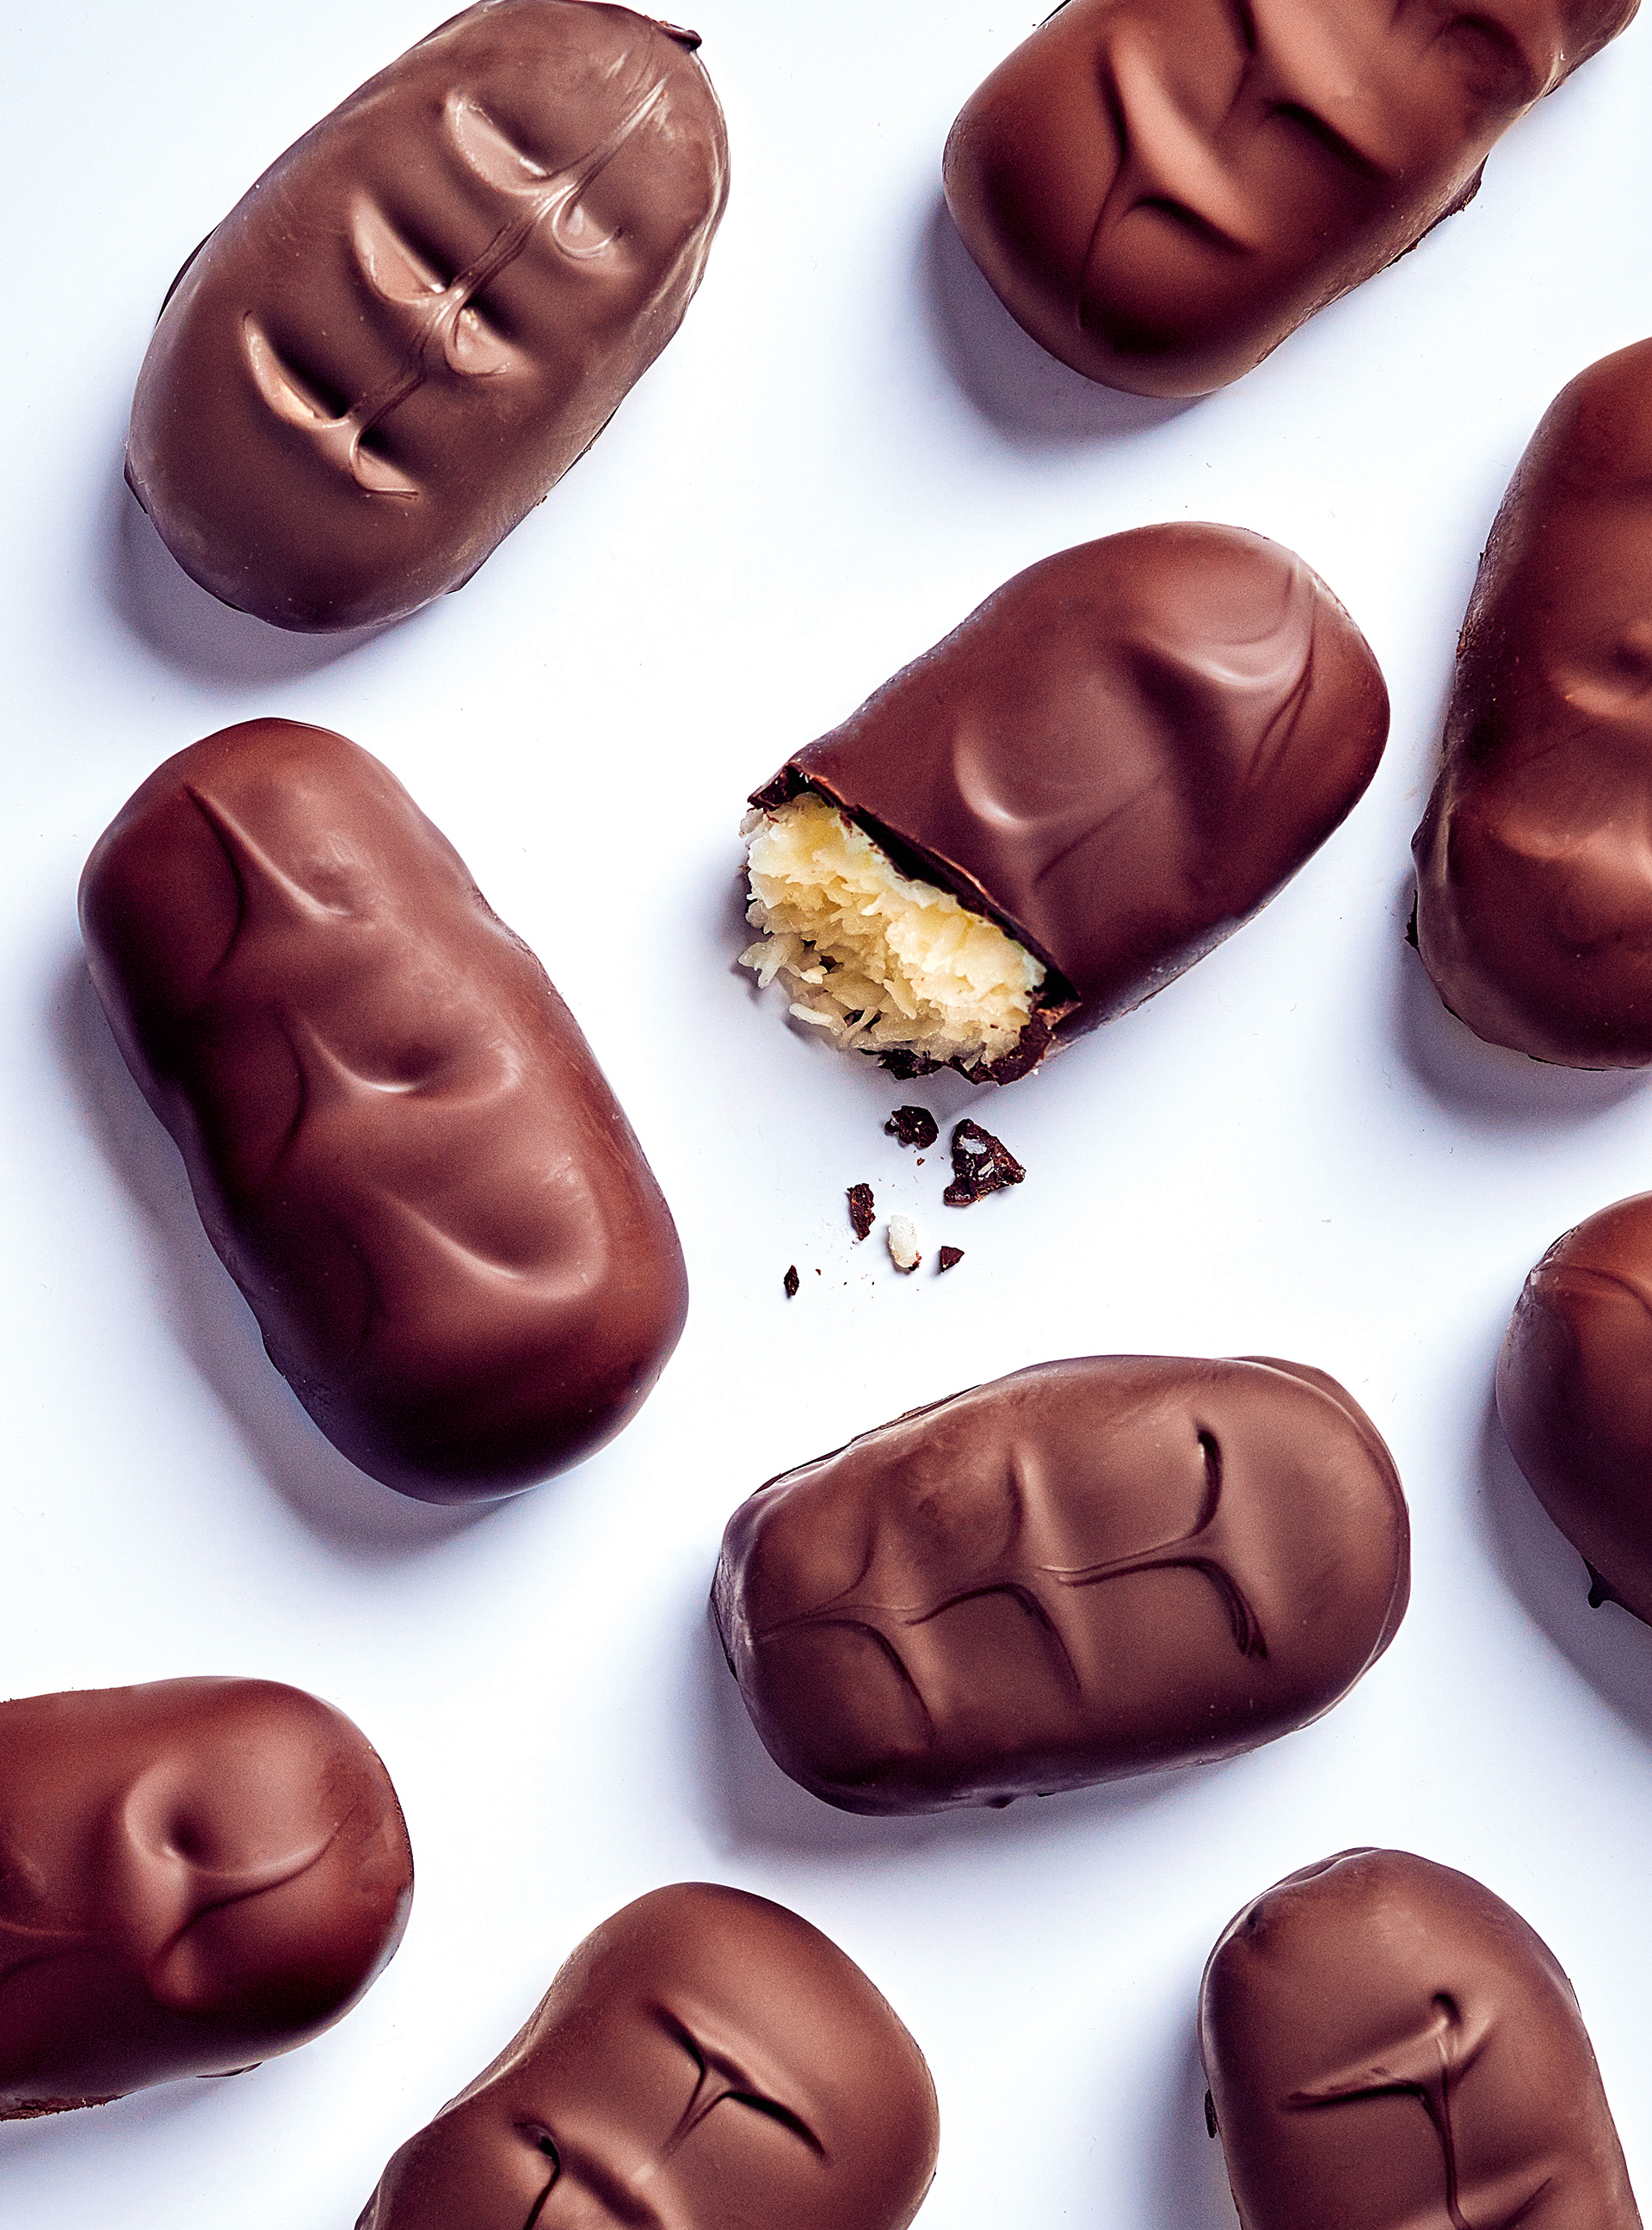 Chocolats fourrés à la noix de coco façon bounty - Recette Ptitchef